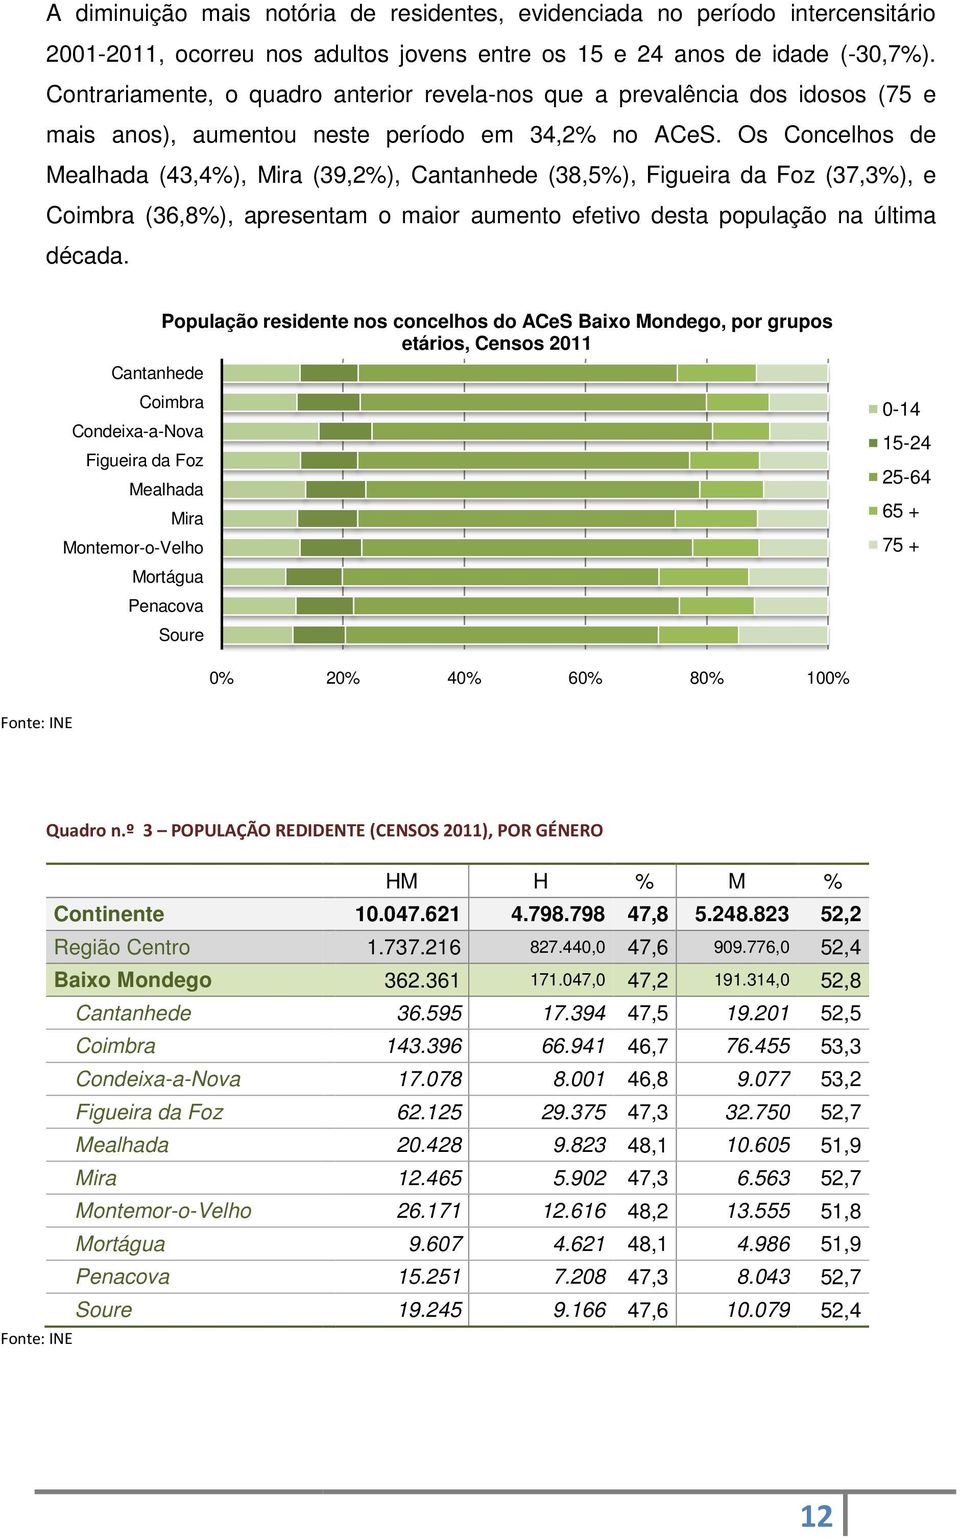 Os Concelhos de Mealhada (43,4%), Mira (39,2%), Cantanhede (38,5%),, Figueira da Foz (37,3%), e Coimbra (36,8%), apresentam o maior aumento efetivo desta população na última década.